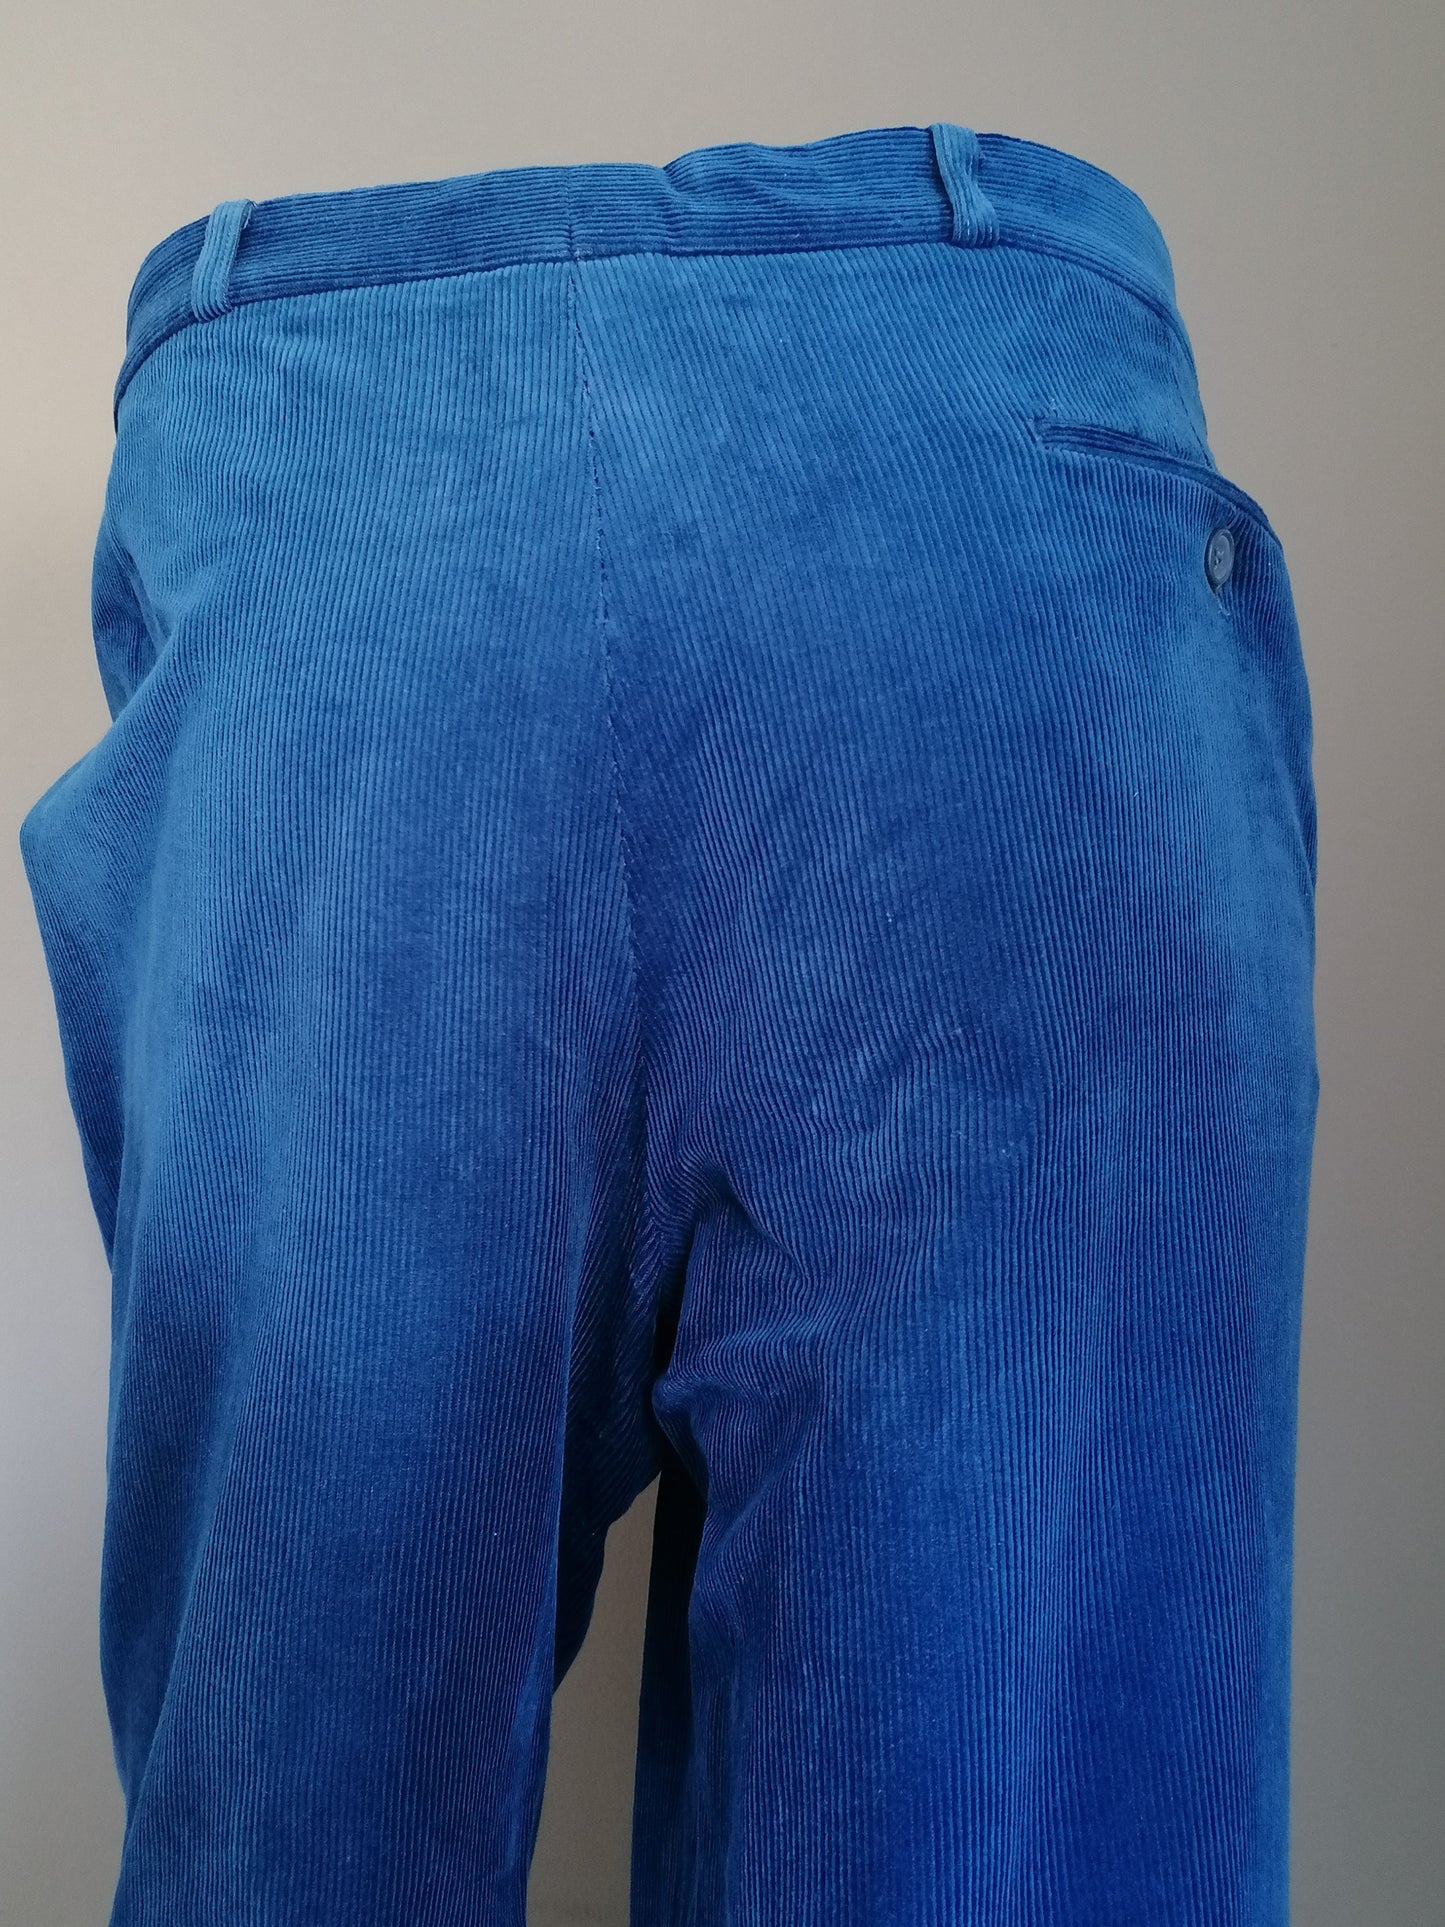 Pantaloni / pantaloni per costole elastica di comfort. Colorato blu. Dimensione 27 (54/L)